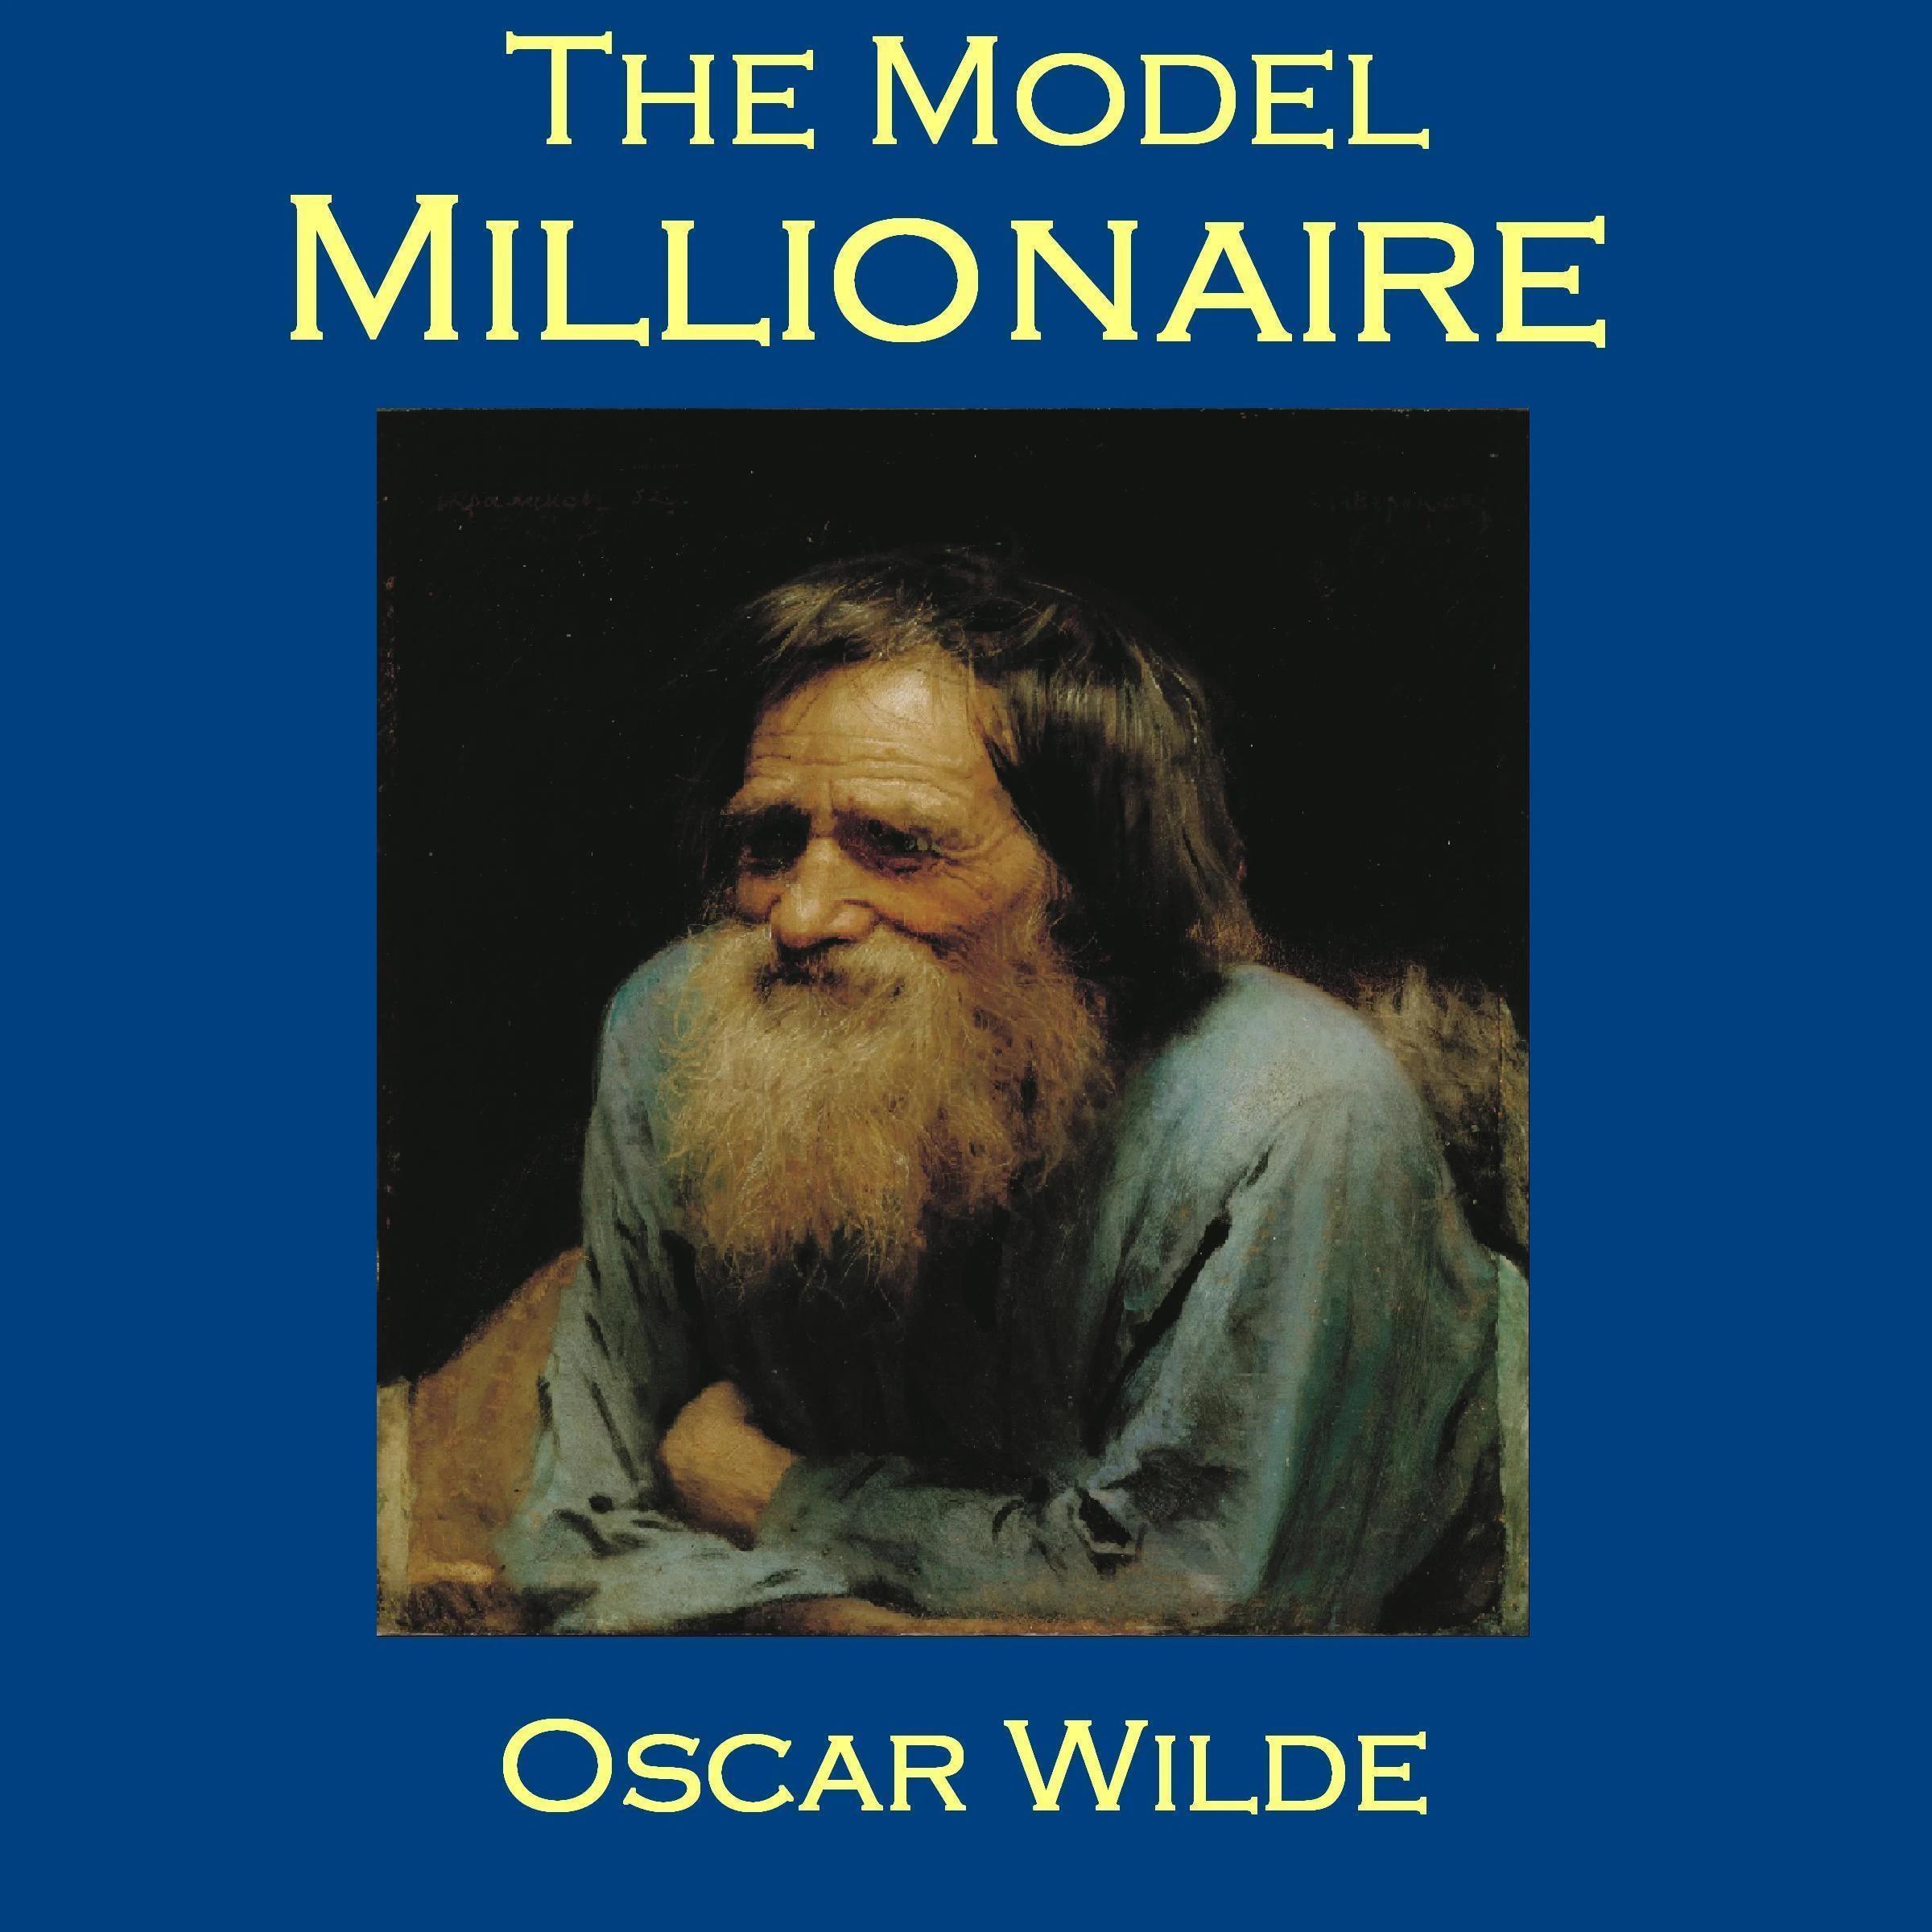 el modelo millonario oscar wilde resumen - Qué tipo de narrador era Oscar Wilde